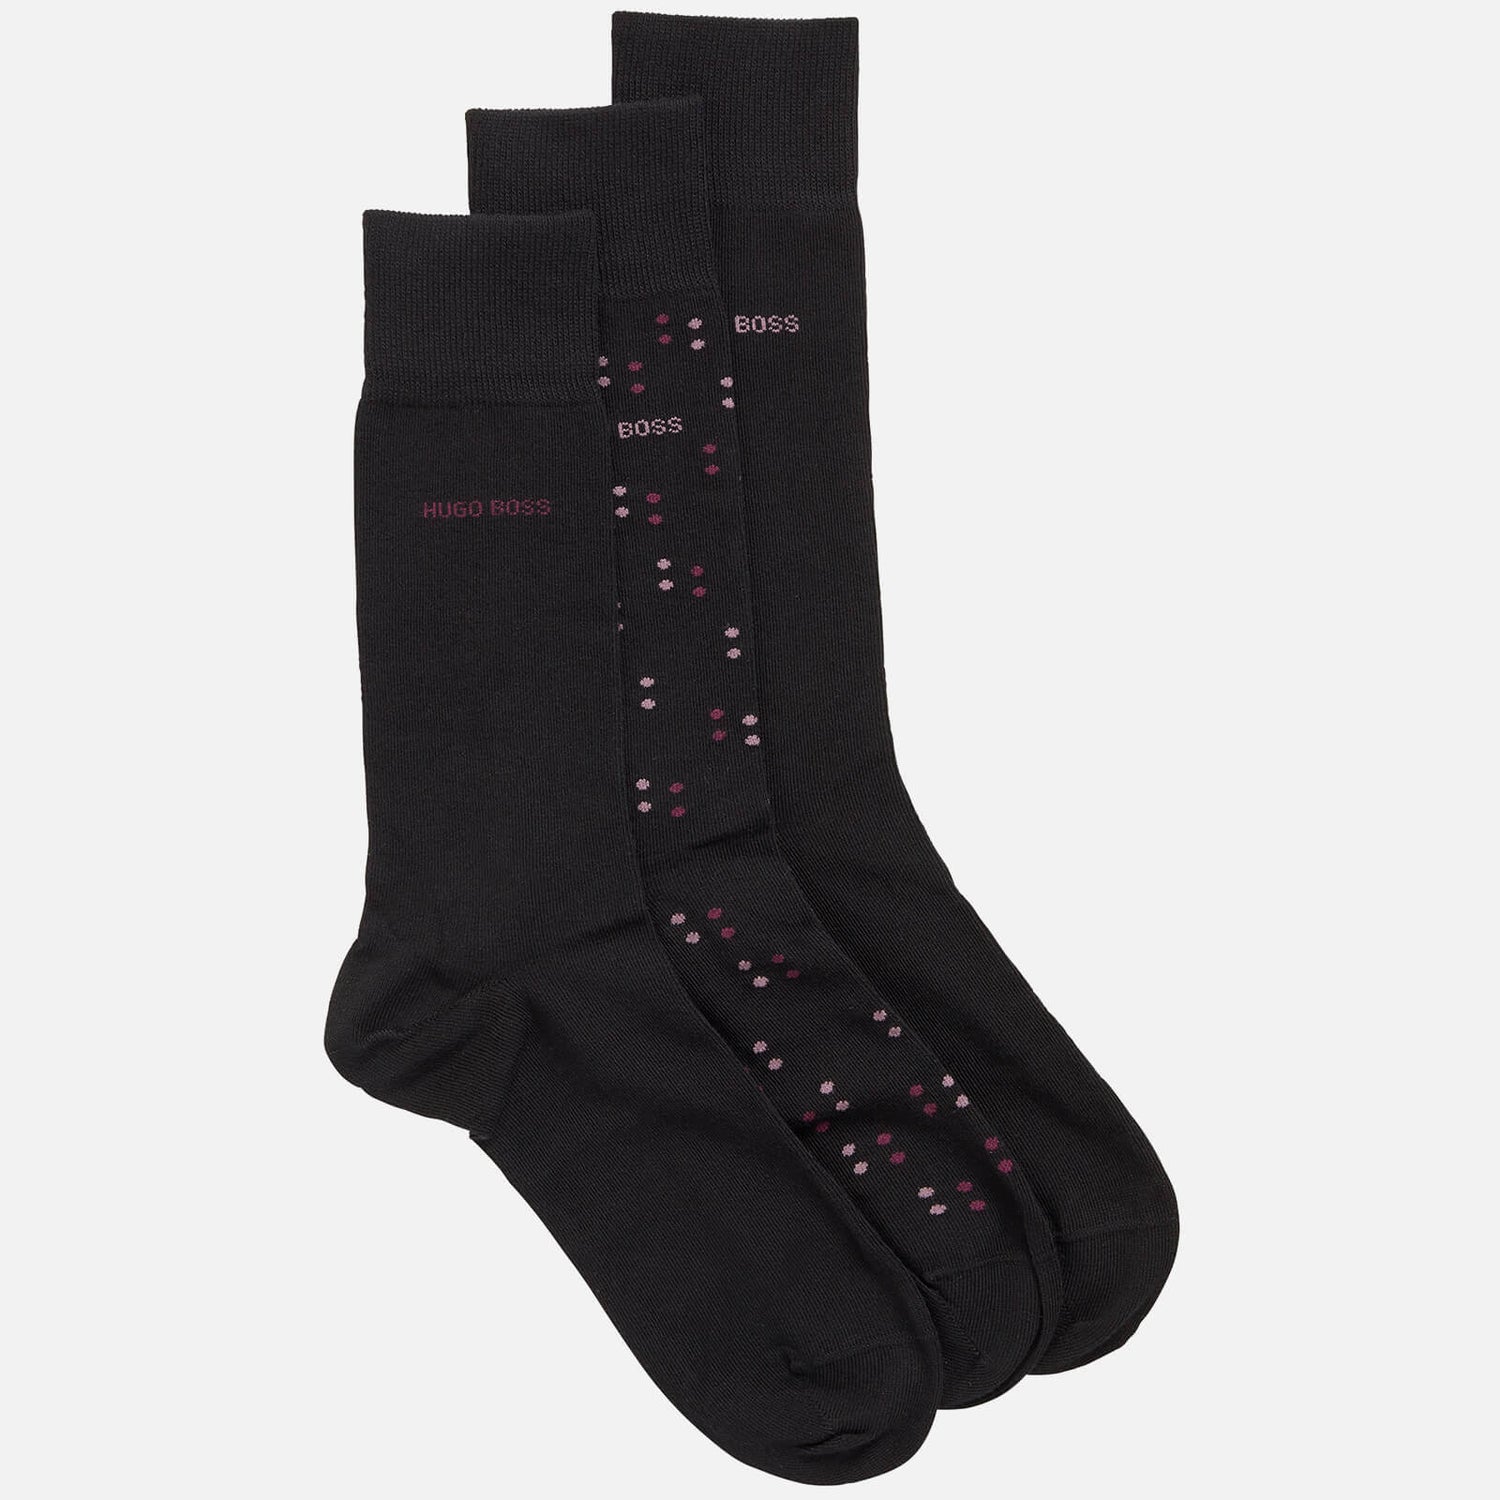 BOSS Bodywear Men's 3-Pack Gift Box Socks - Black